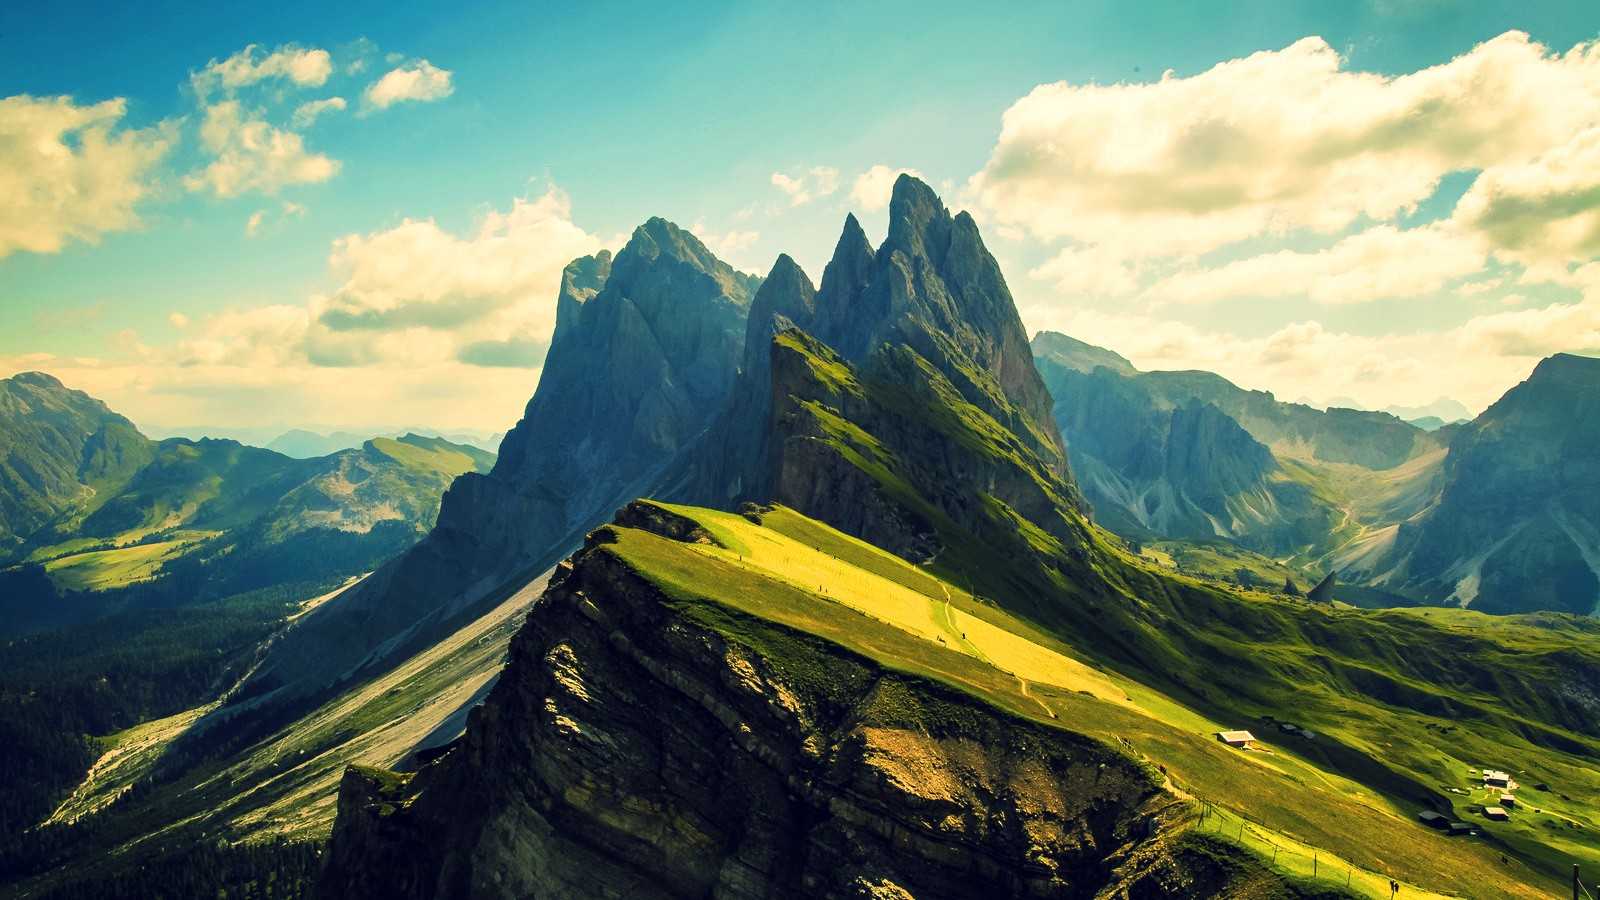 Download Beautiful Mountain Wallpaper 1600x900 - Full HD Wall